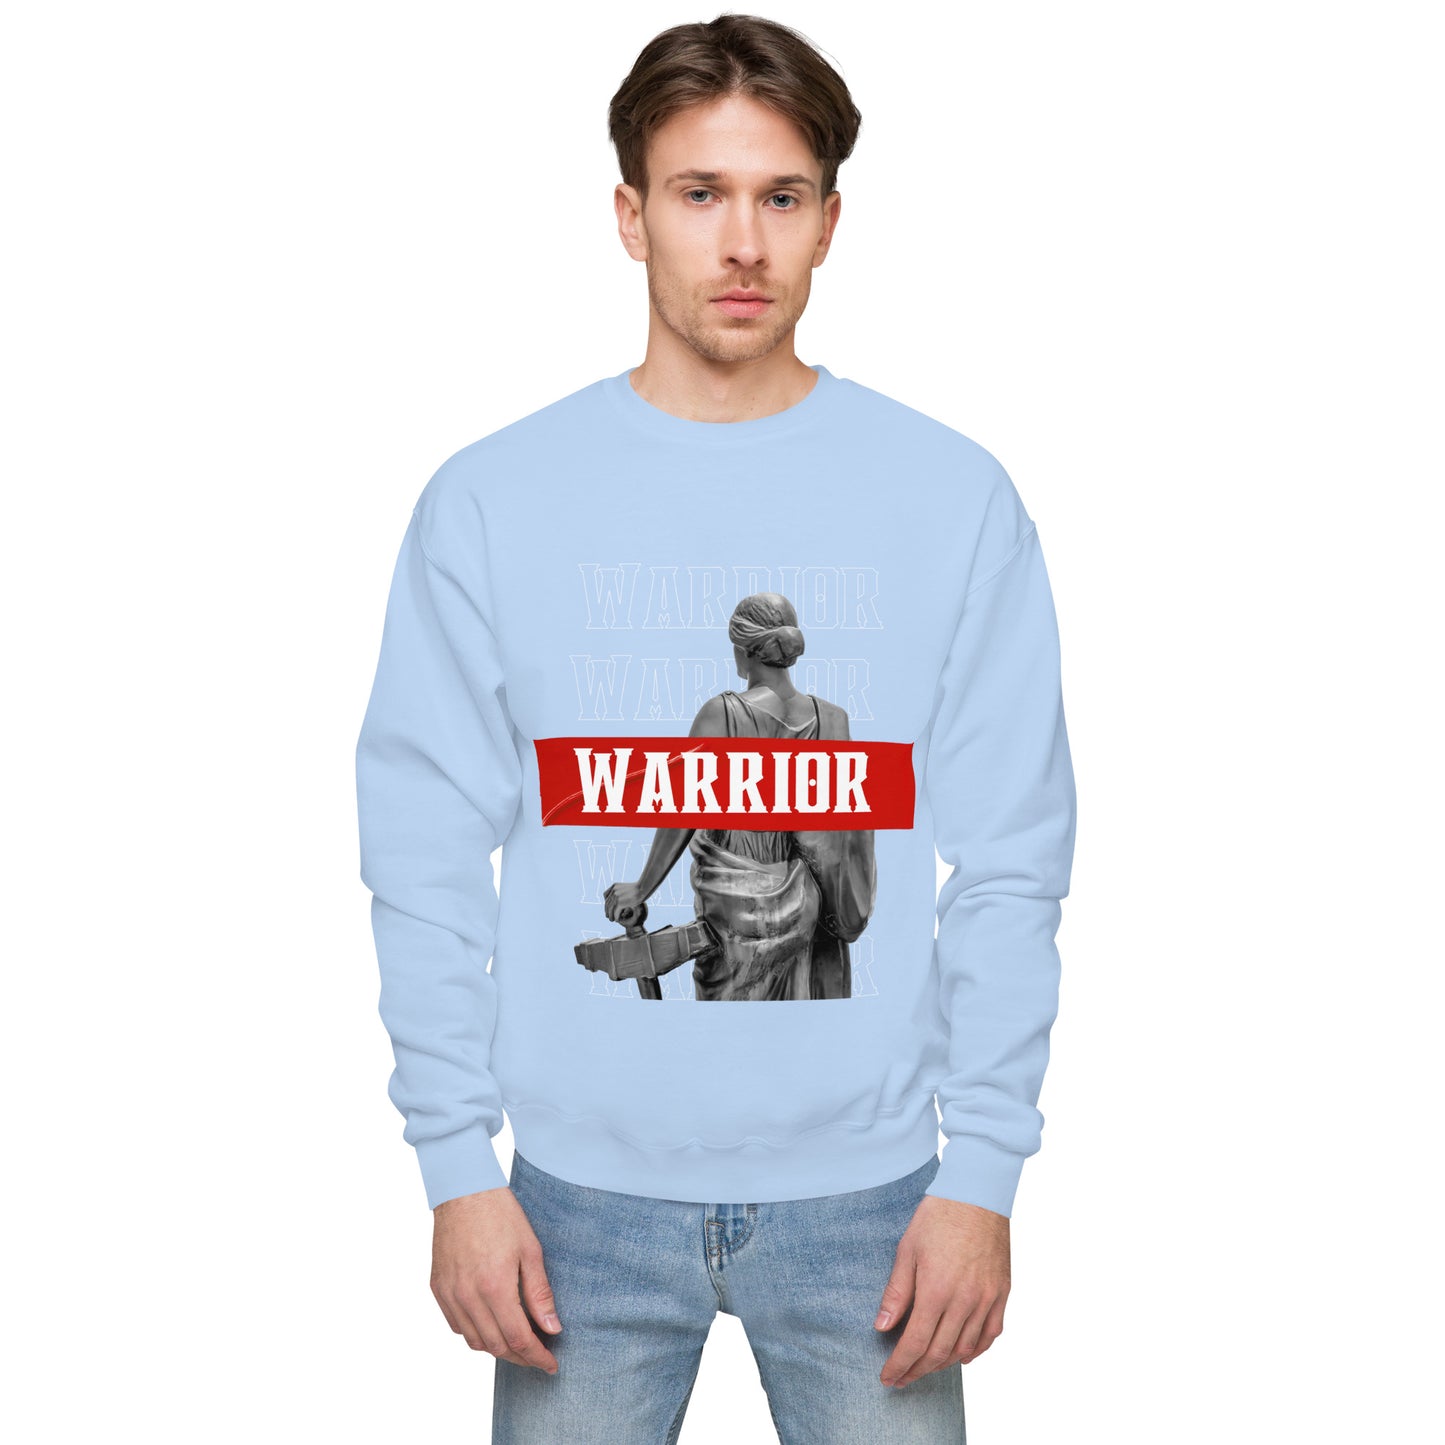 Warrior fleece sweatshirt